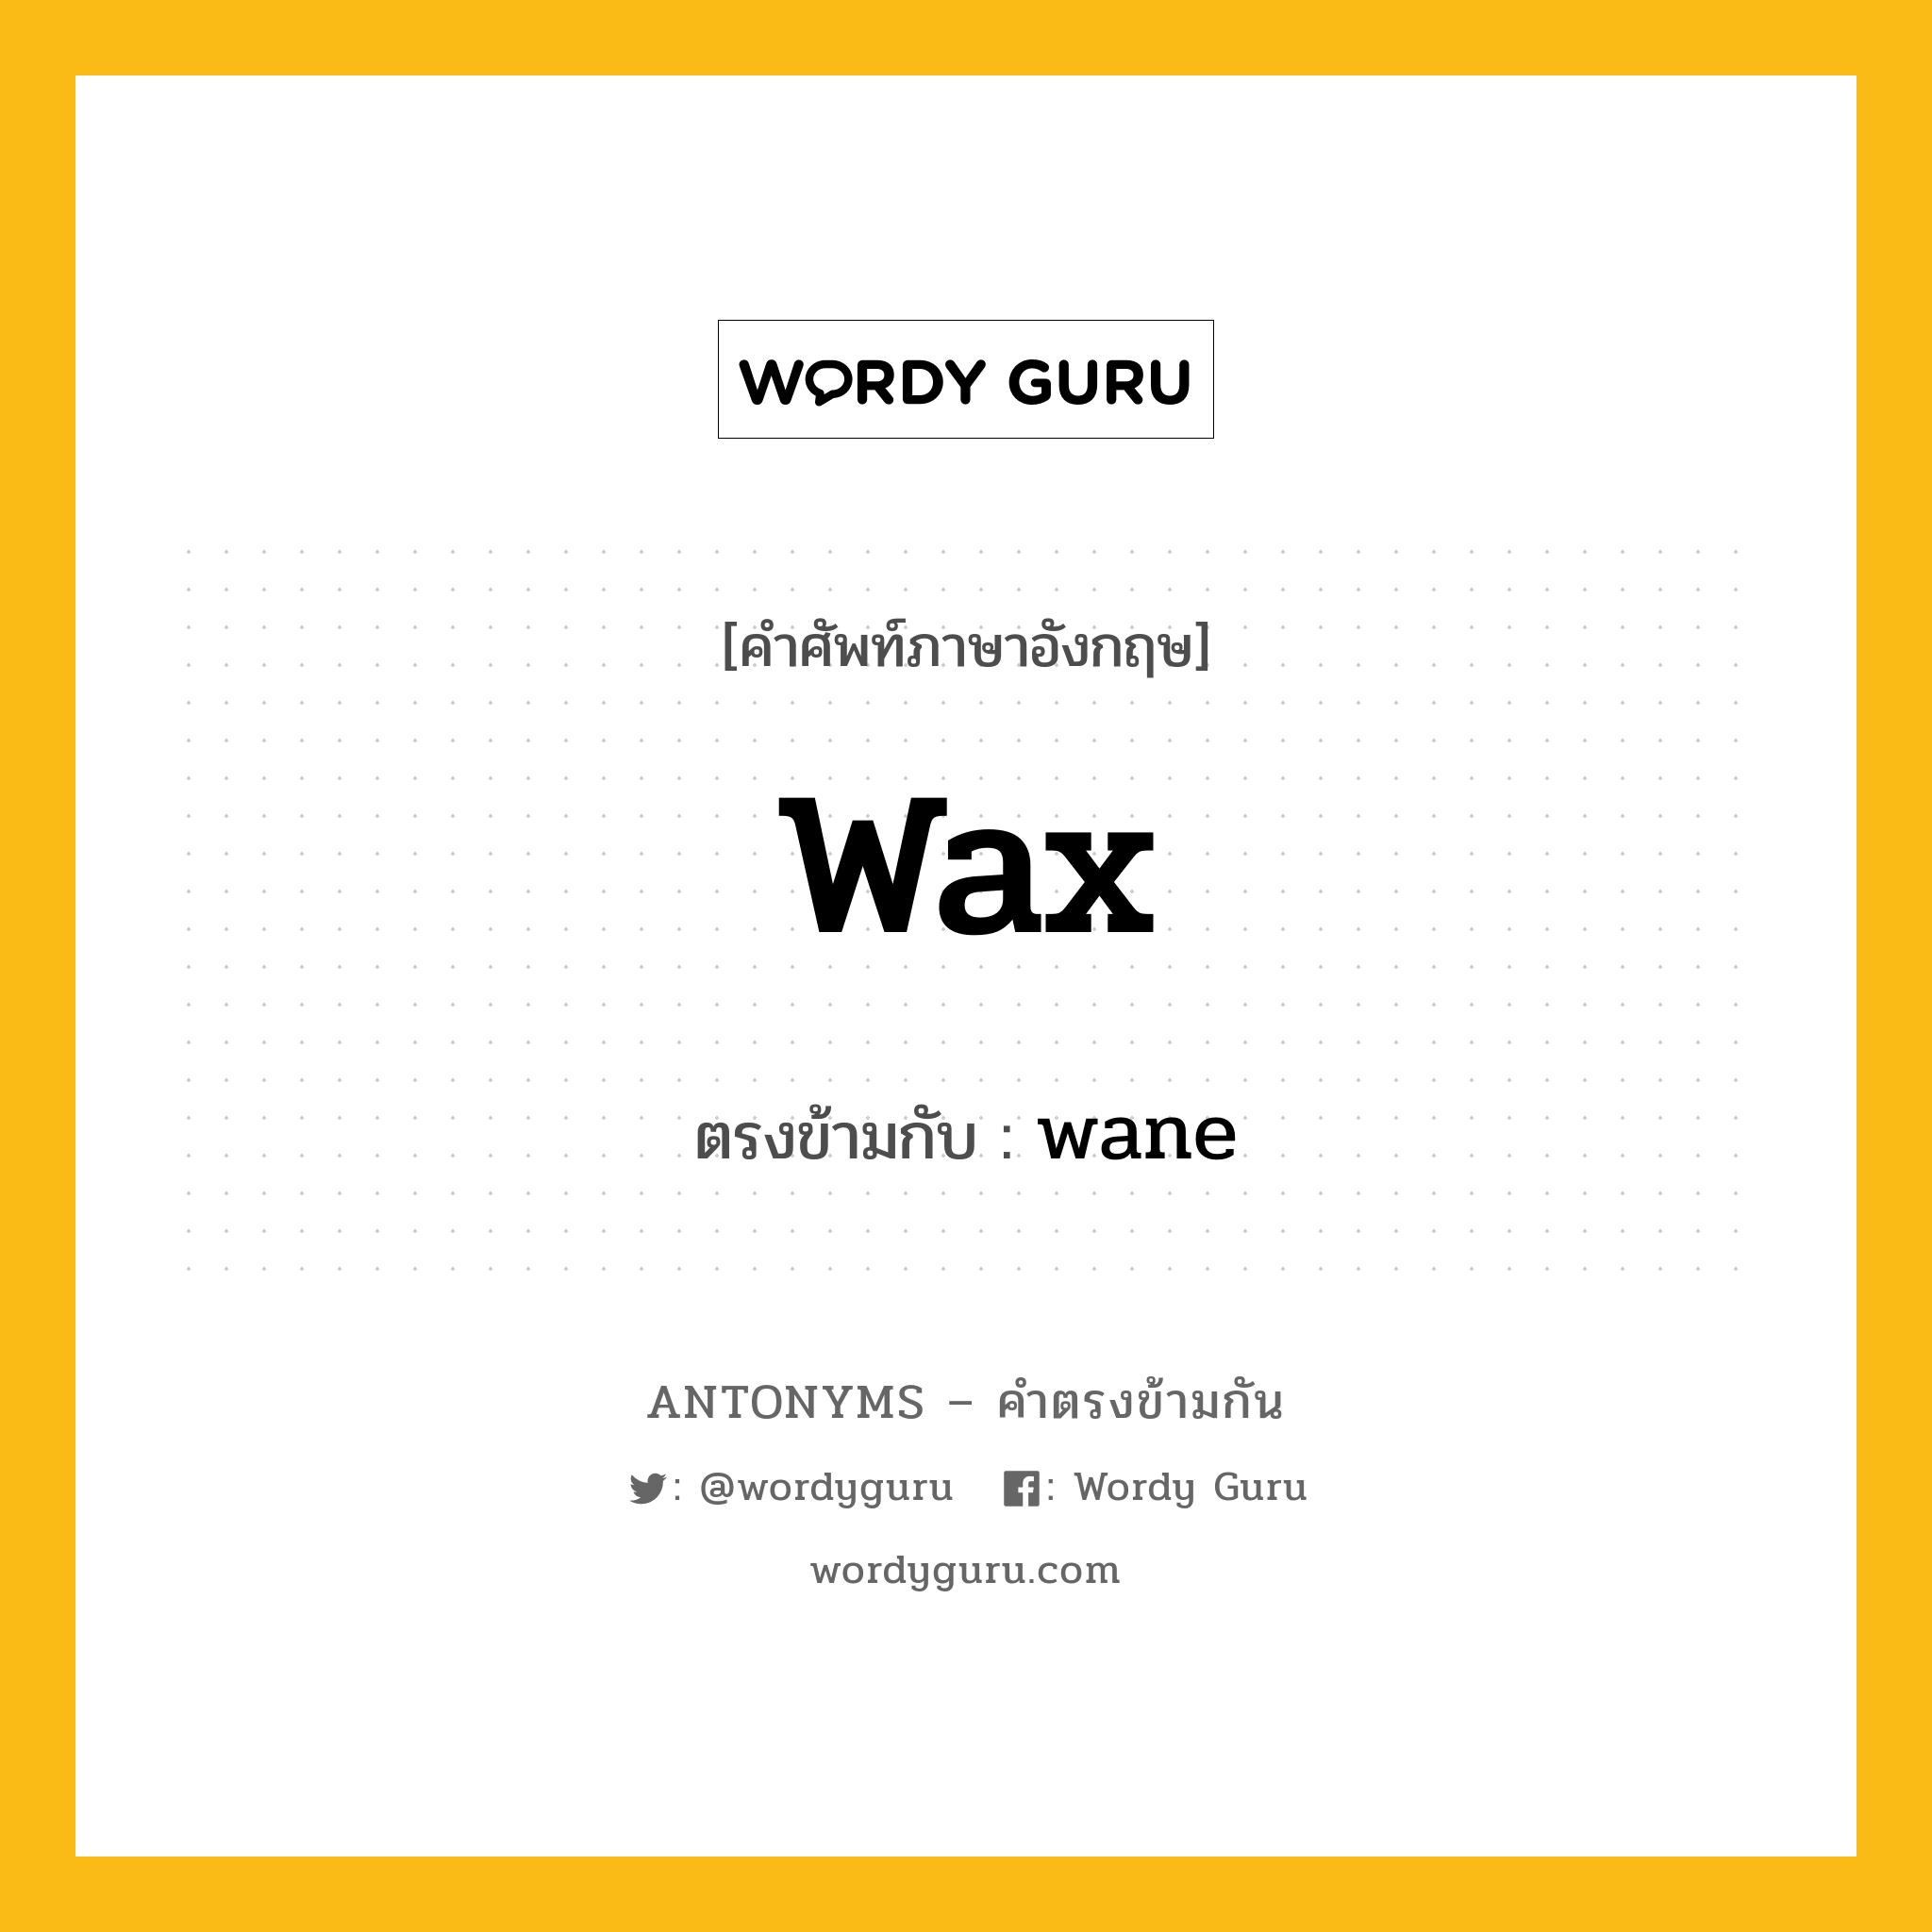 wax เป็นคำตรงข้ามกับคำไหนบ้าง?, คำศัพท์ภาษาอังกฤษ wax ตรงข้ามกับ wane หมวด wane